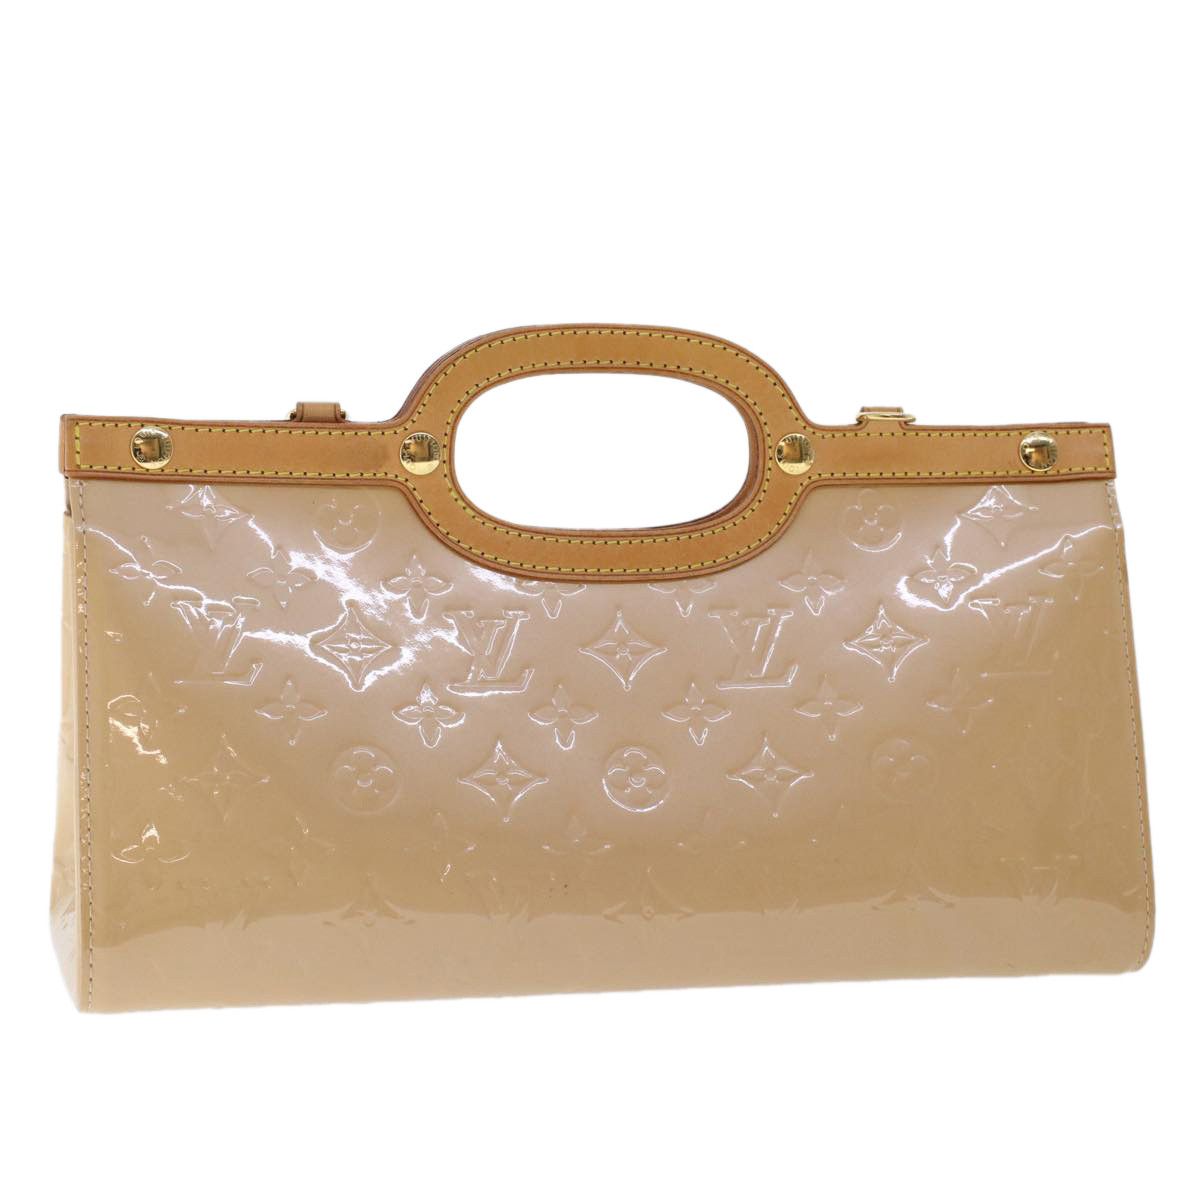 Handbags Louis Vuitton Louis Vuitton Damier Ebene Sac Plat Hand Bag N51140 LV Auth AM4744